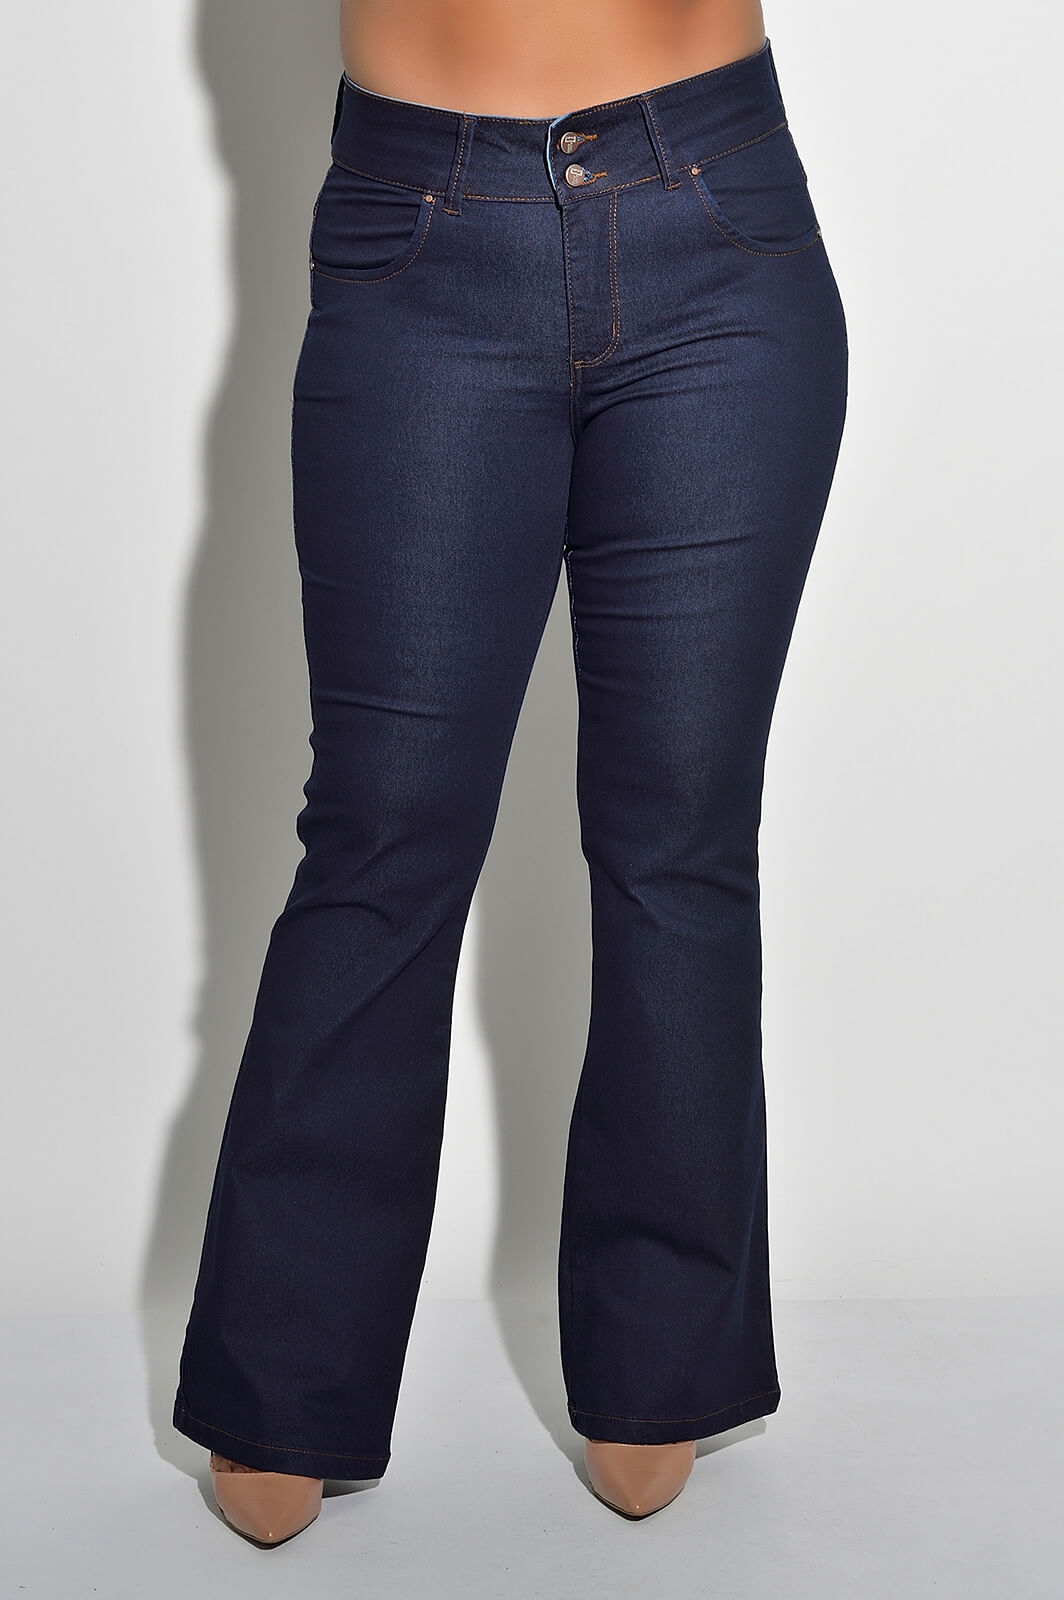 Calça Flare Plus Size Jeans com Elastano Faixa Trançada Best Size